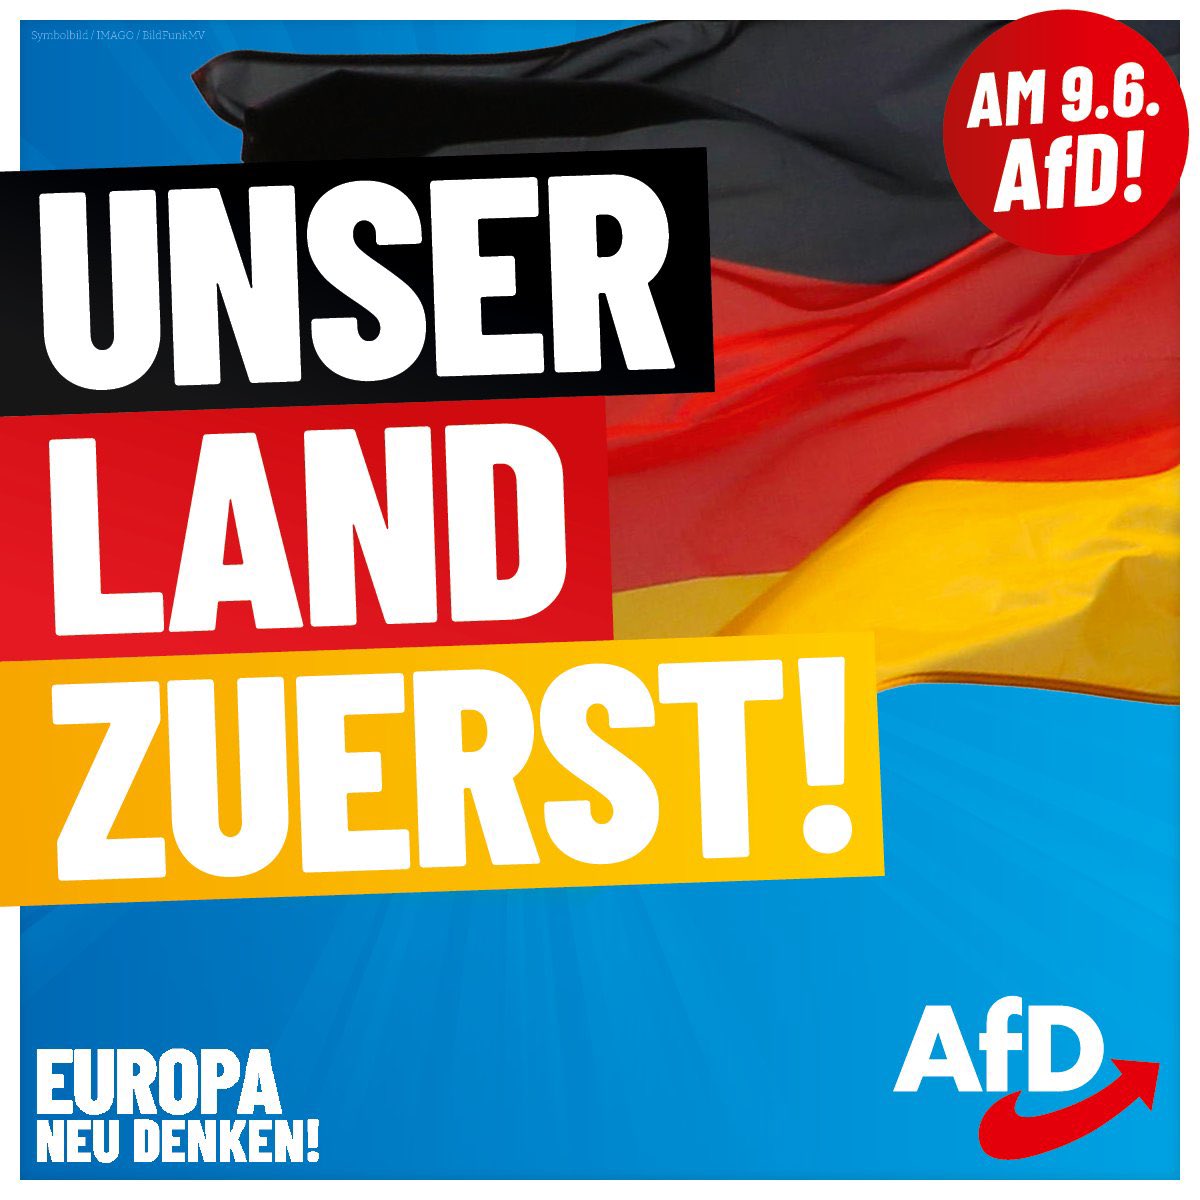 @DieLeserinAfD Das wird gemacht❣️💙🖤❤️💛💙
#Deutschlandabernormal
#AfDwirkt #nurnochAfD #AfD
#Deutschlandimmerzuerst
#Europaneudenken